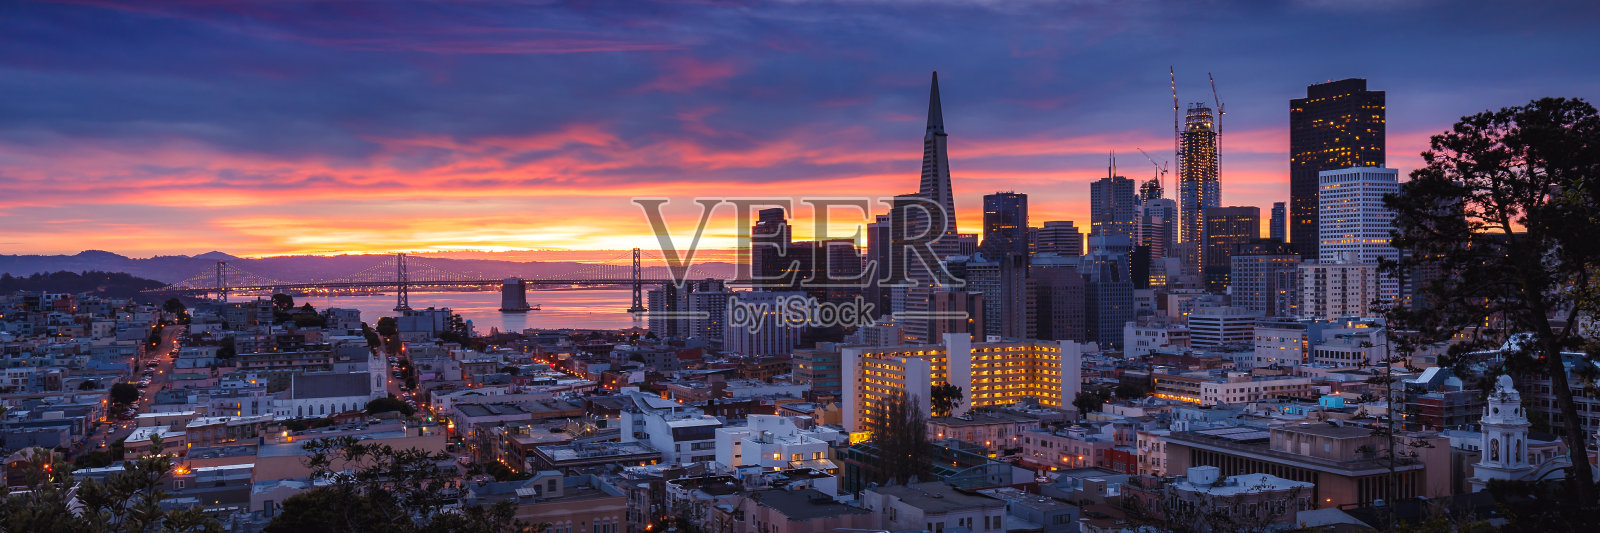 旧金山黎明时分照片摄影图片